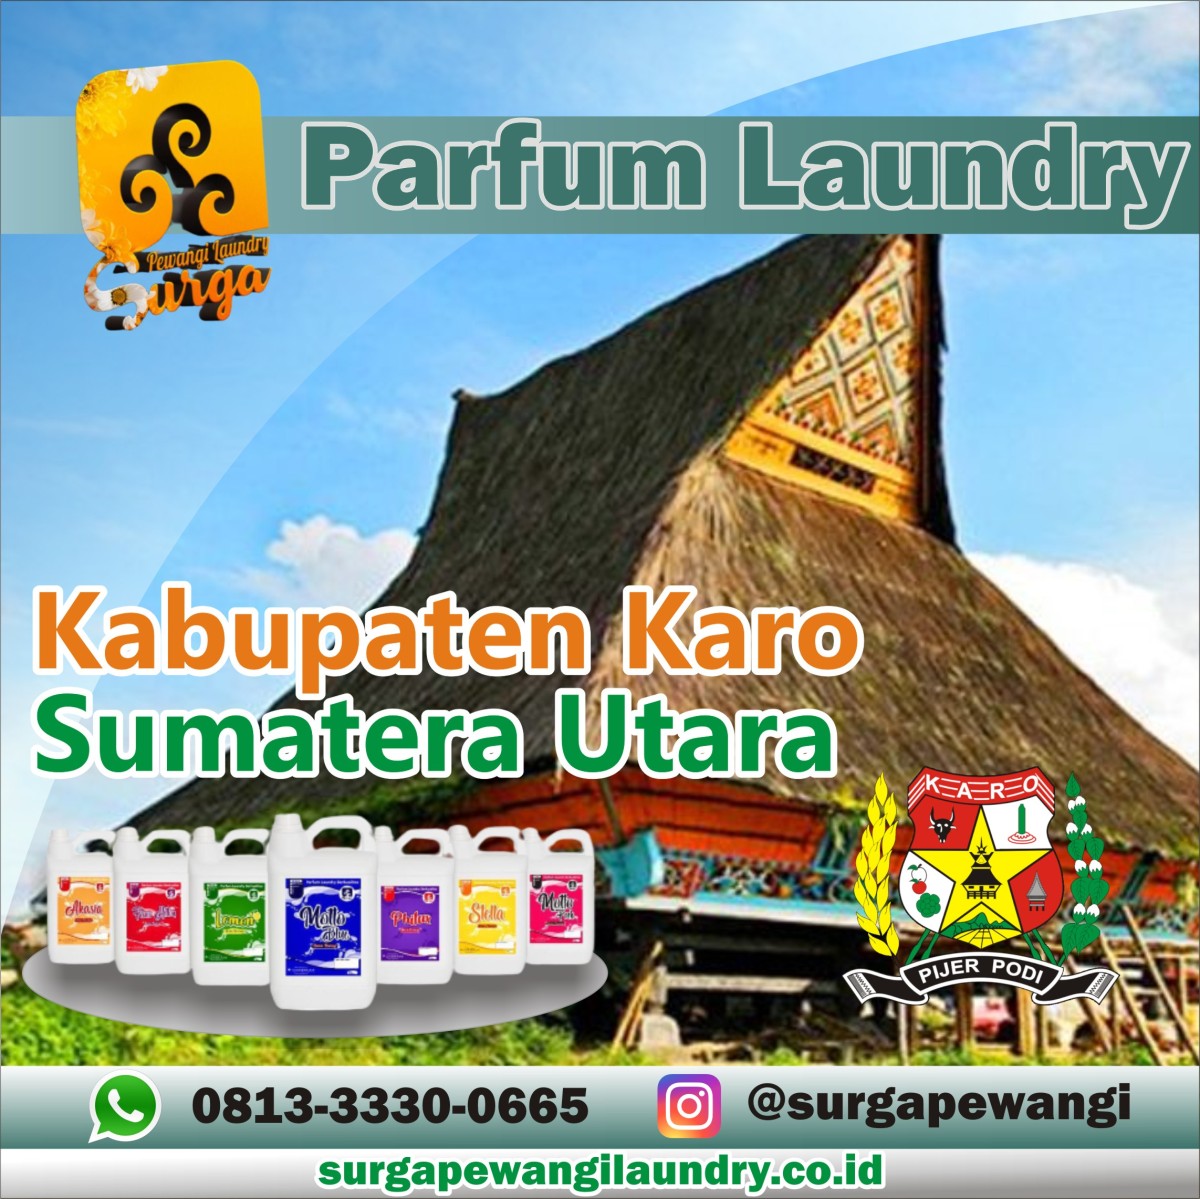 Parfum Laundry Kabupaten Karo, Sumatera Utara